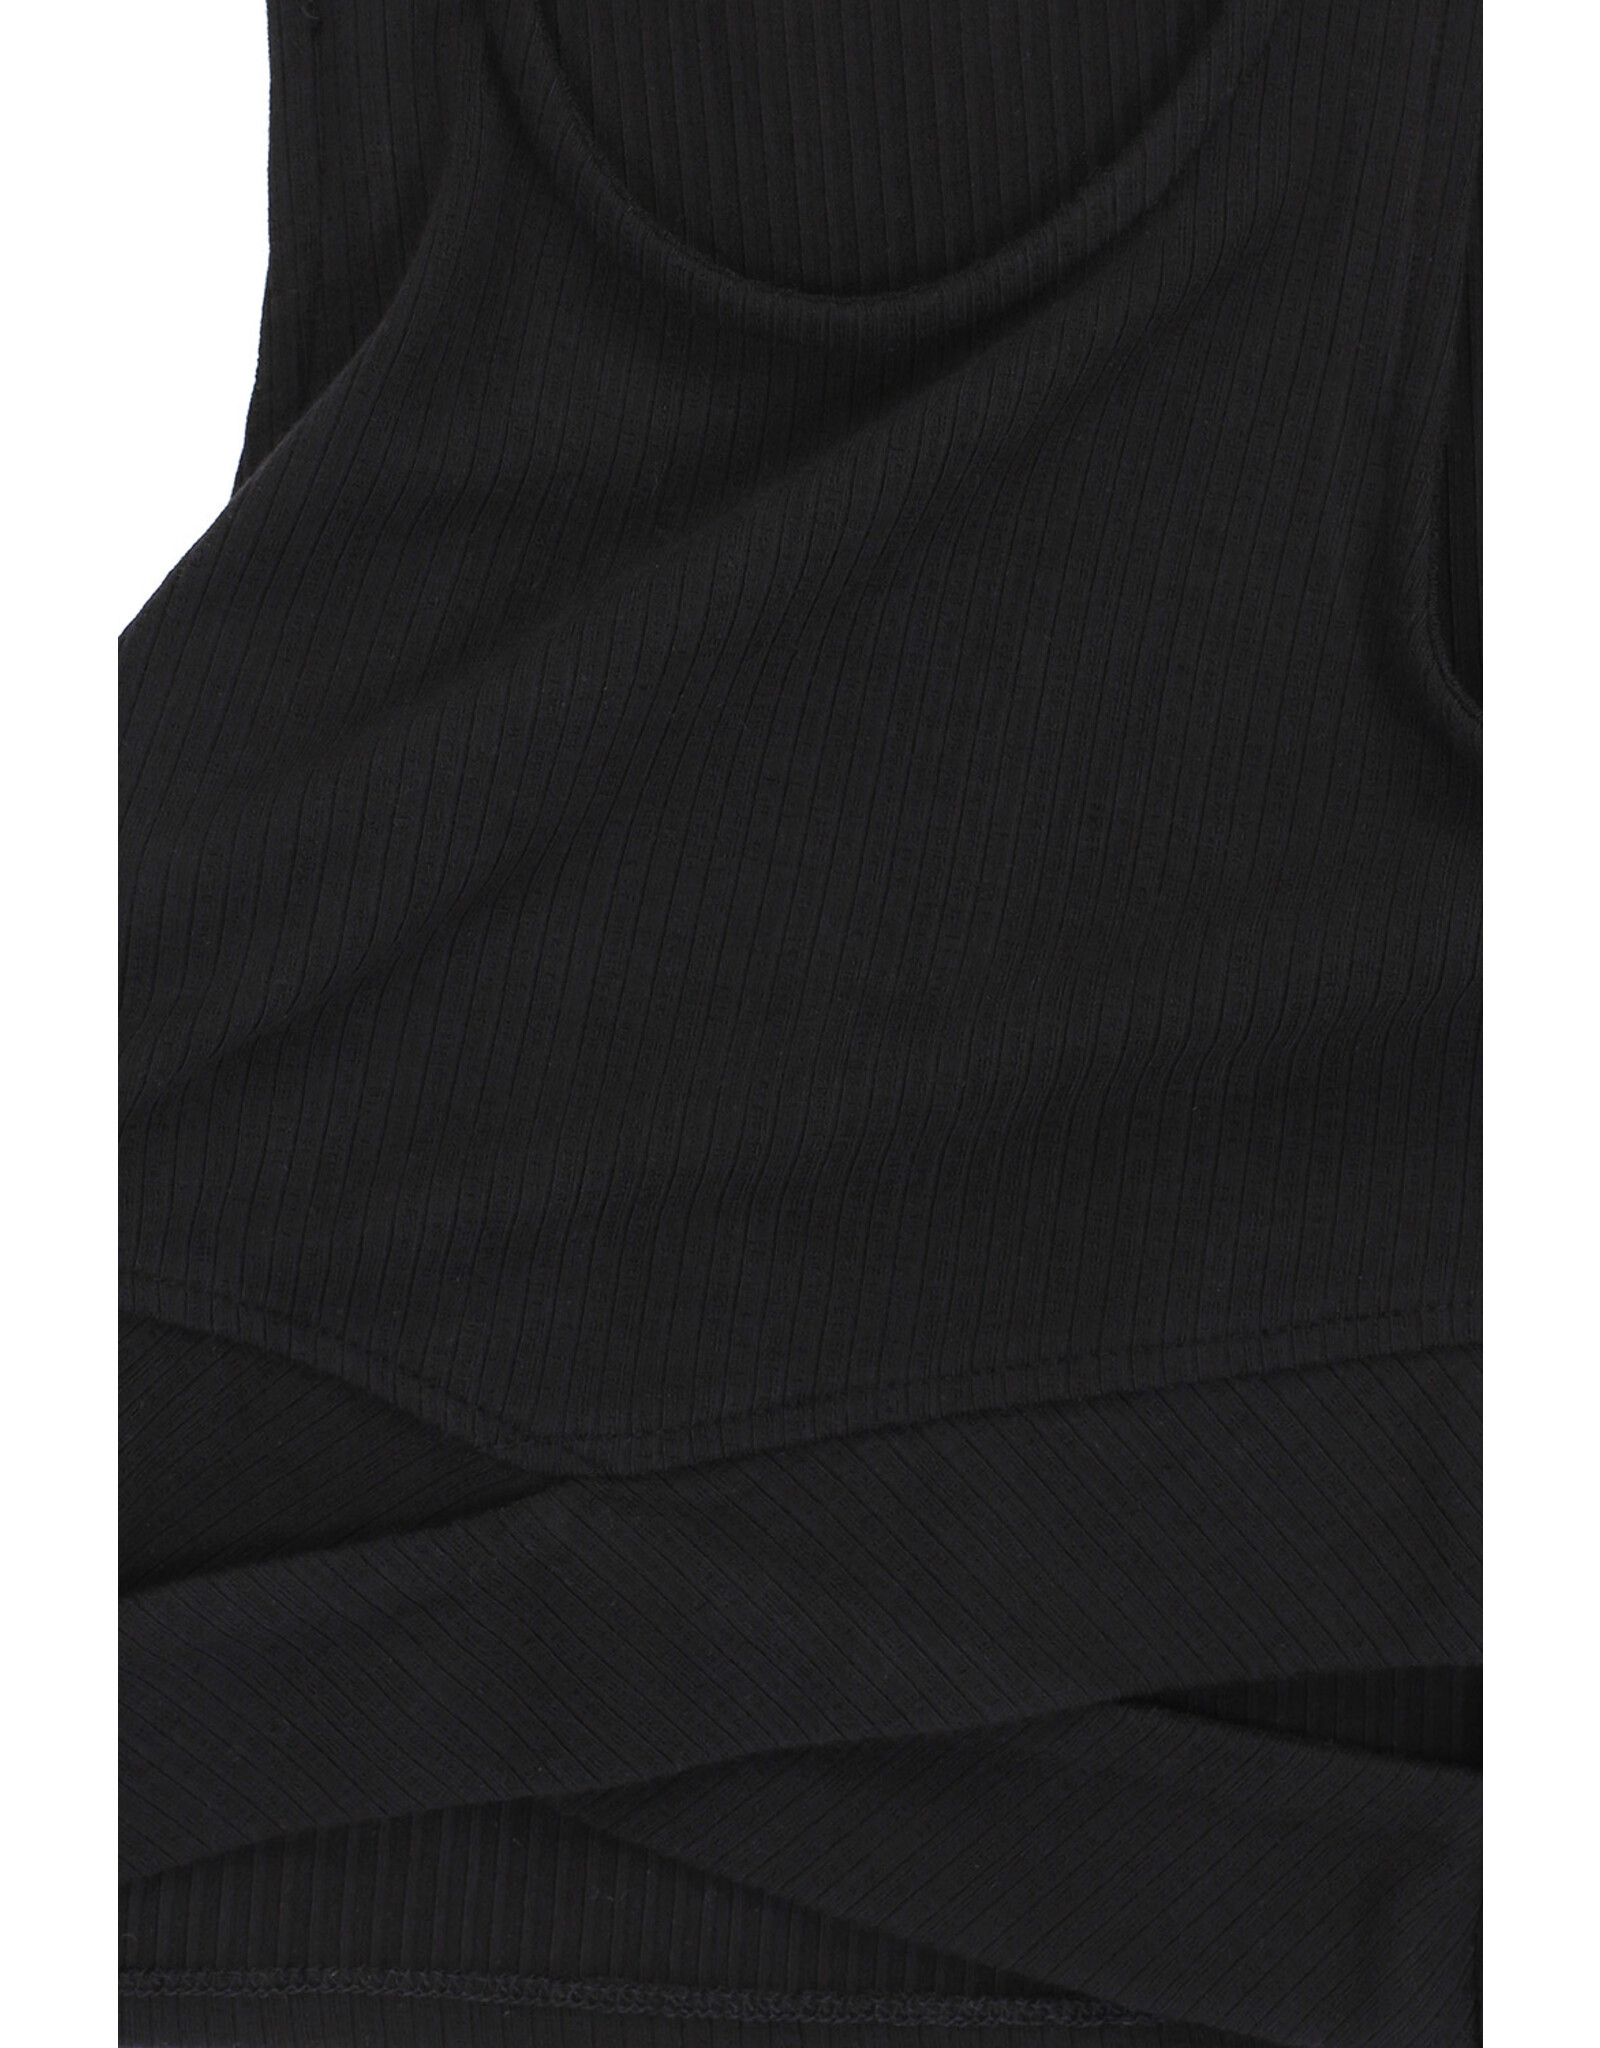 LOOXS 10sixteen 4-tshirts 10Sixteen sleeveles Top black